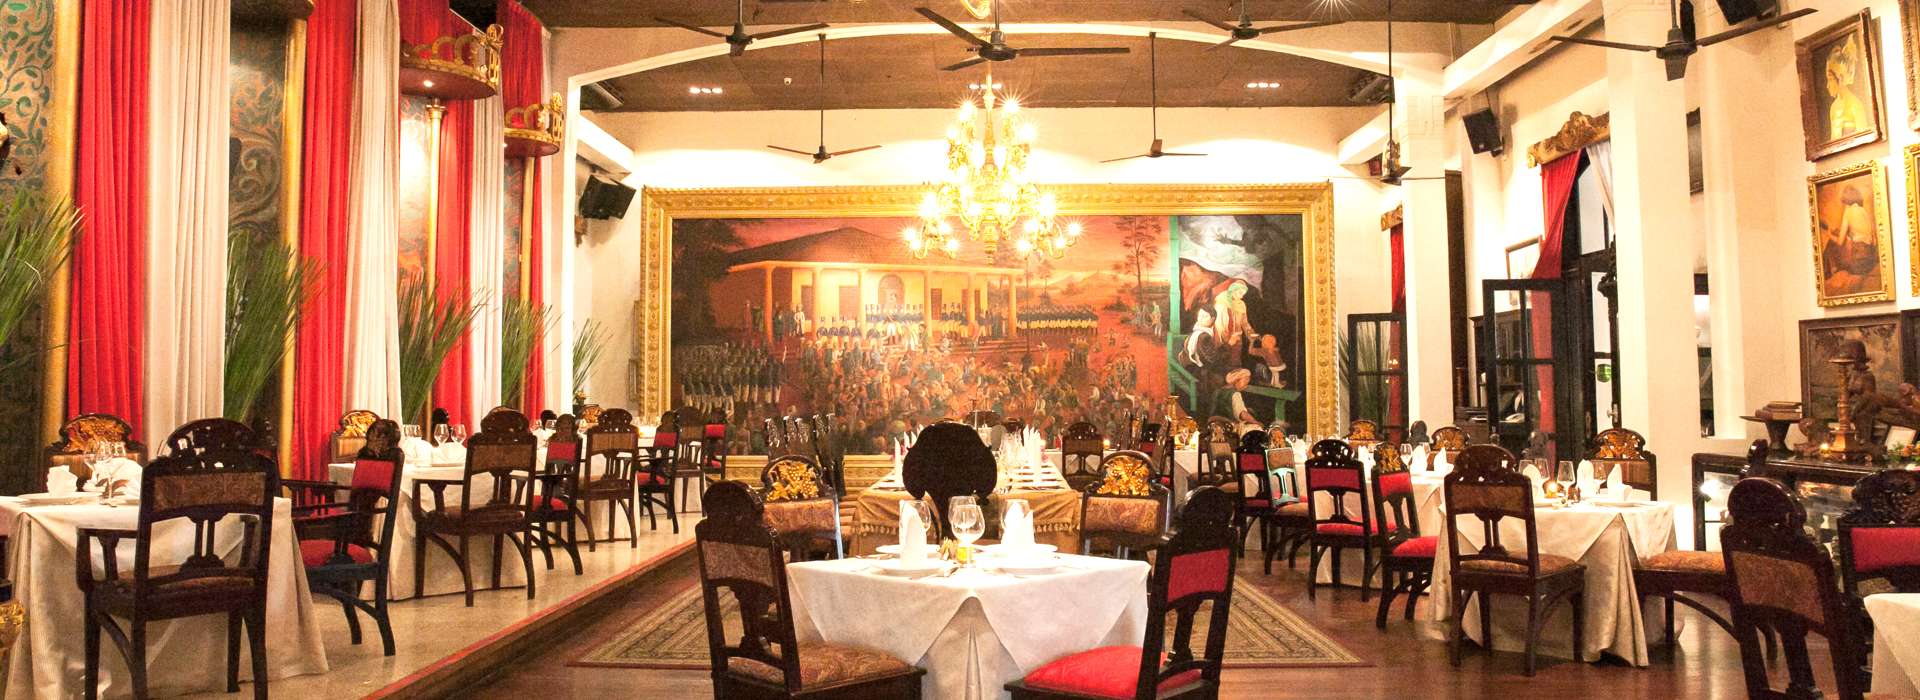 restoran mewah nan legendaris untuk wisata Bobobox kota tua